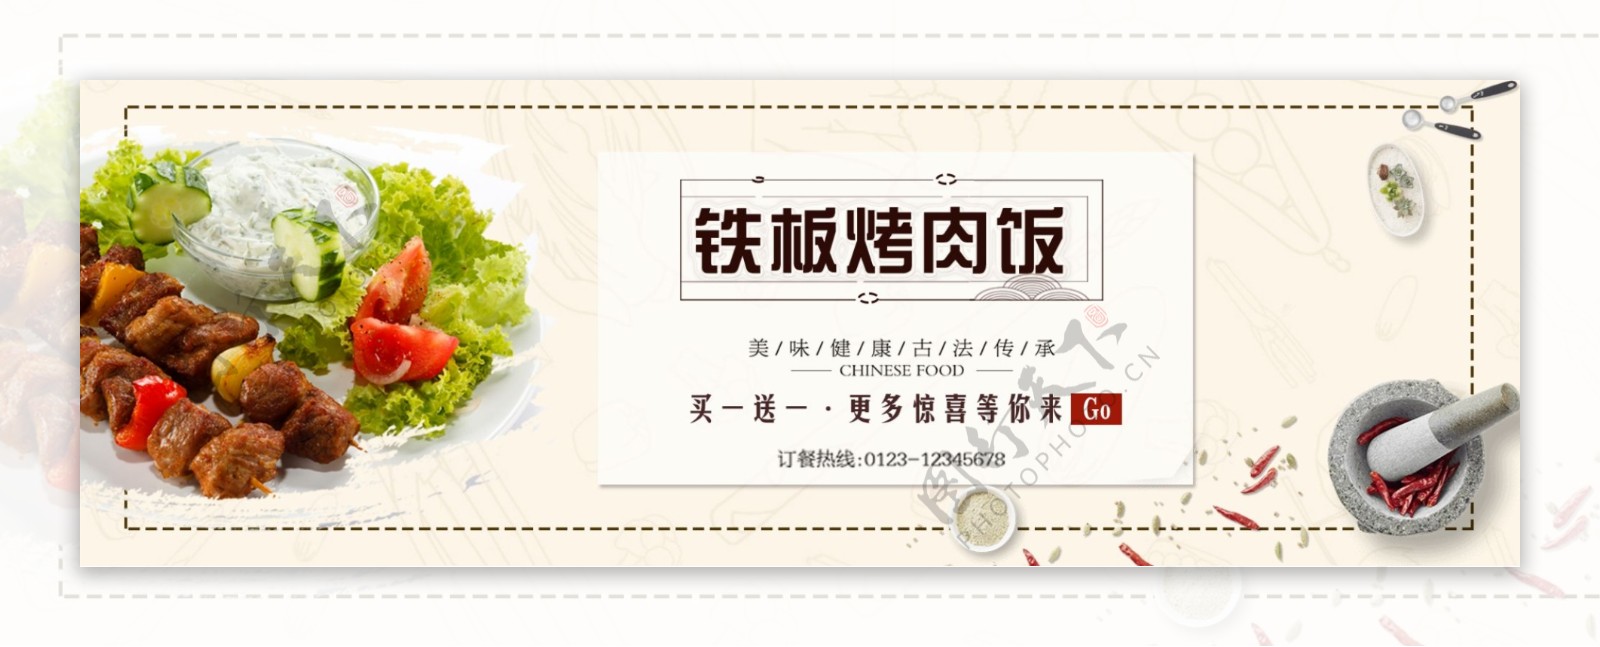 简笔蔬菜食物烤肉浅色背景美食海报电商淘宝banner食品食物